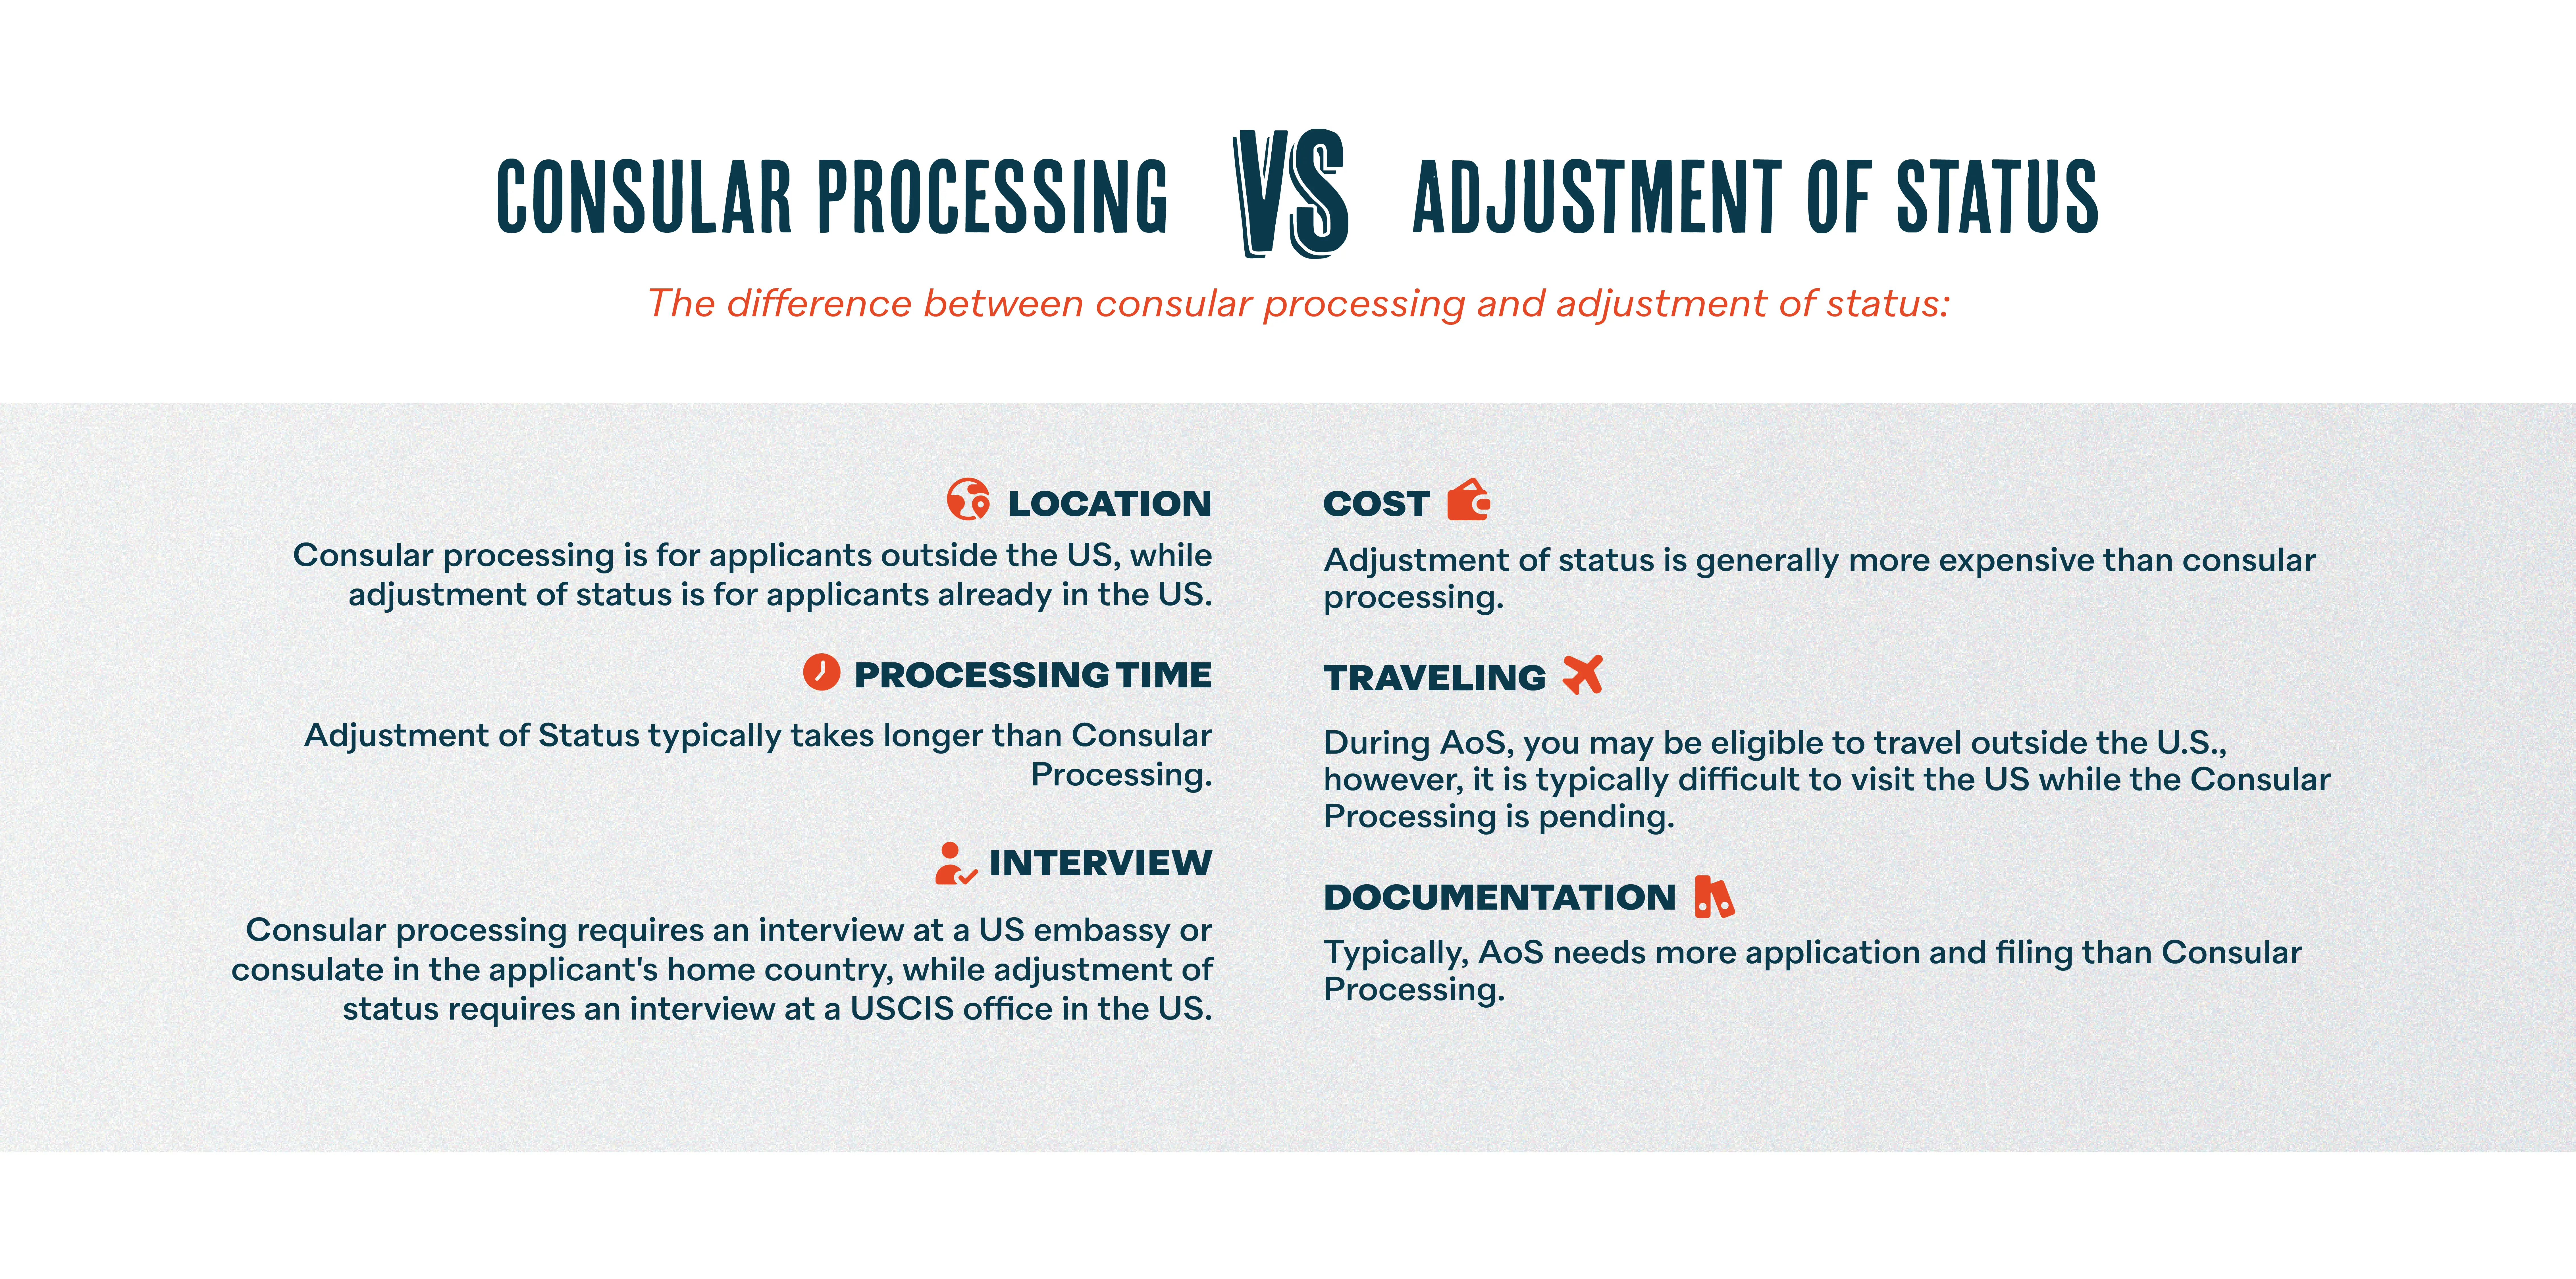 Consular Processing vs Adjustment of Status